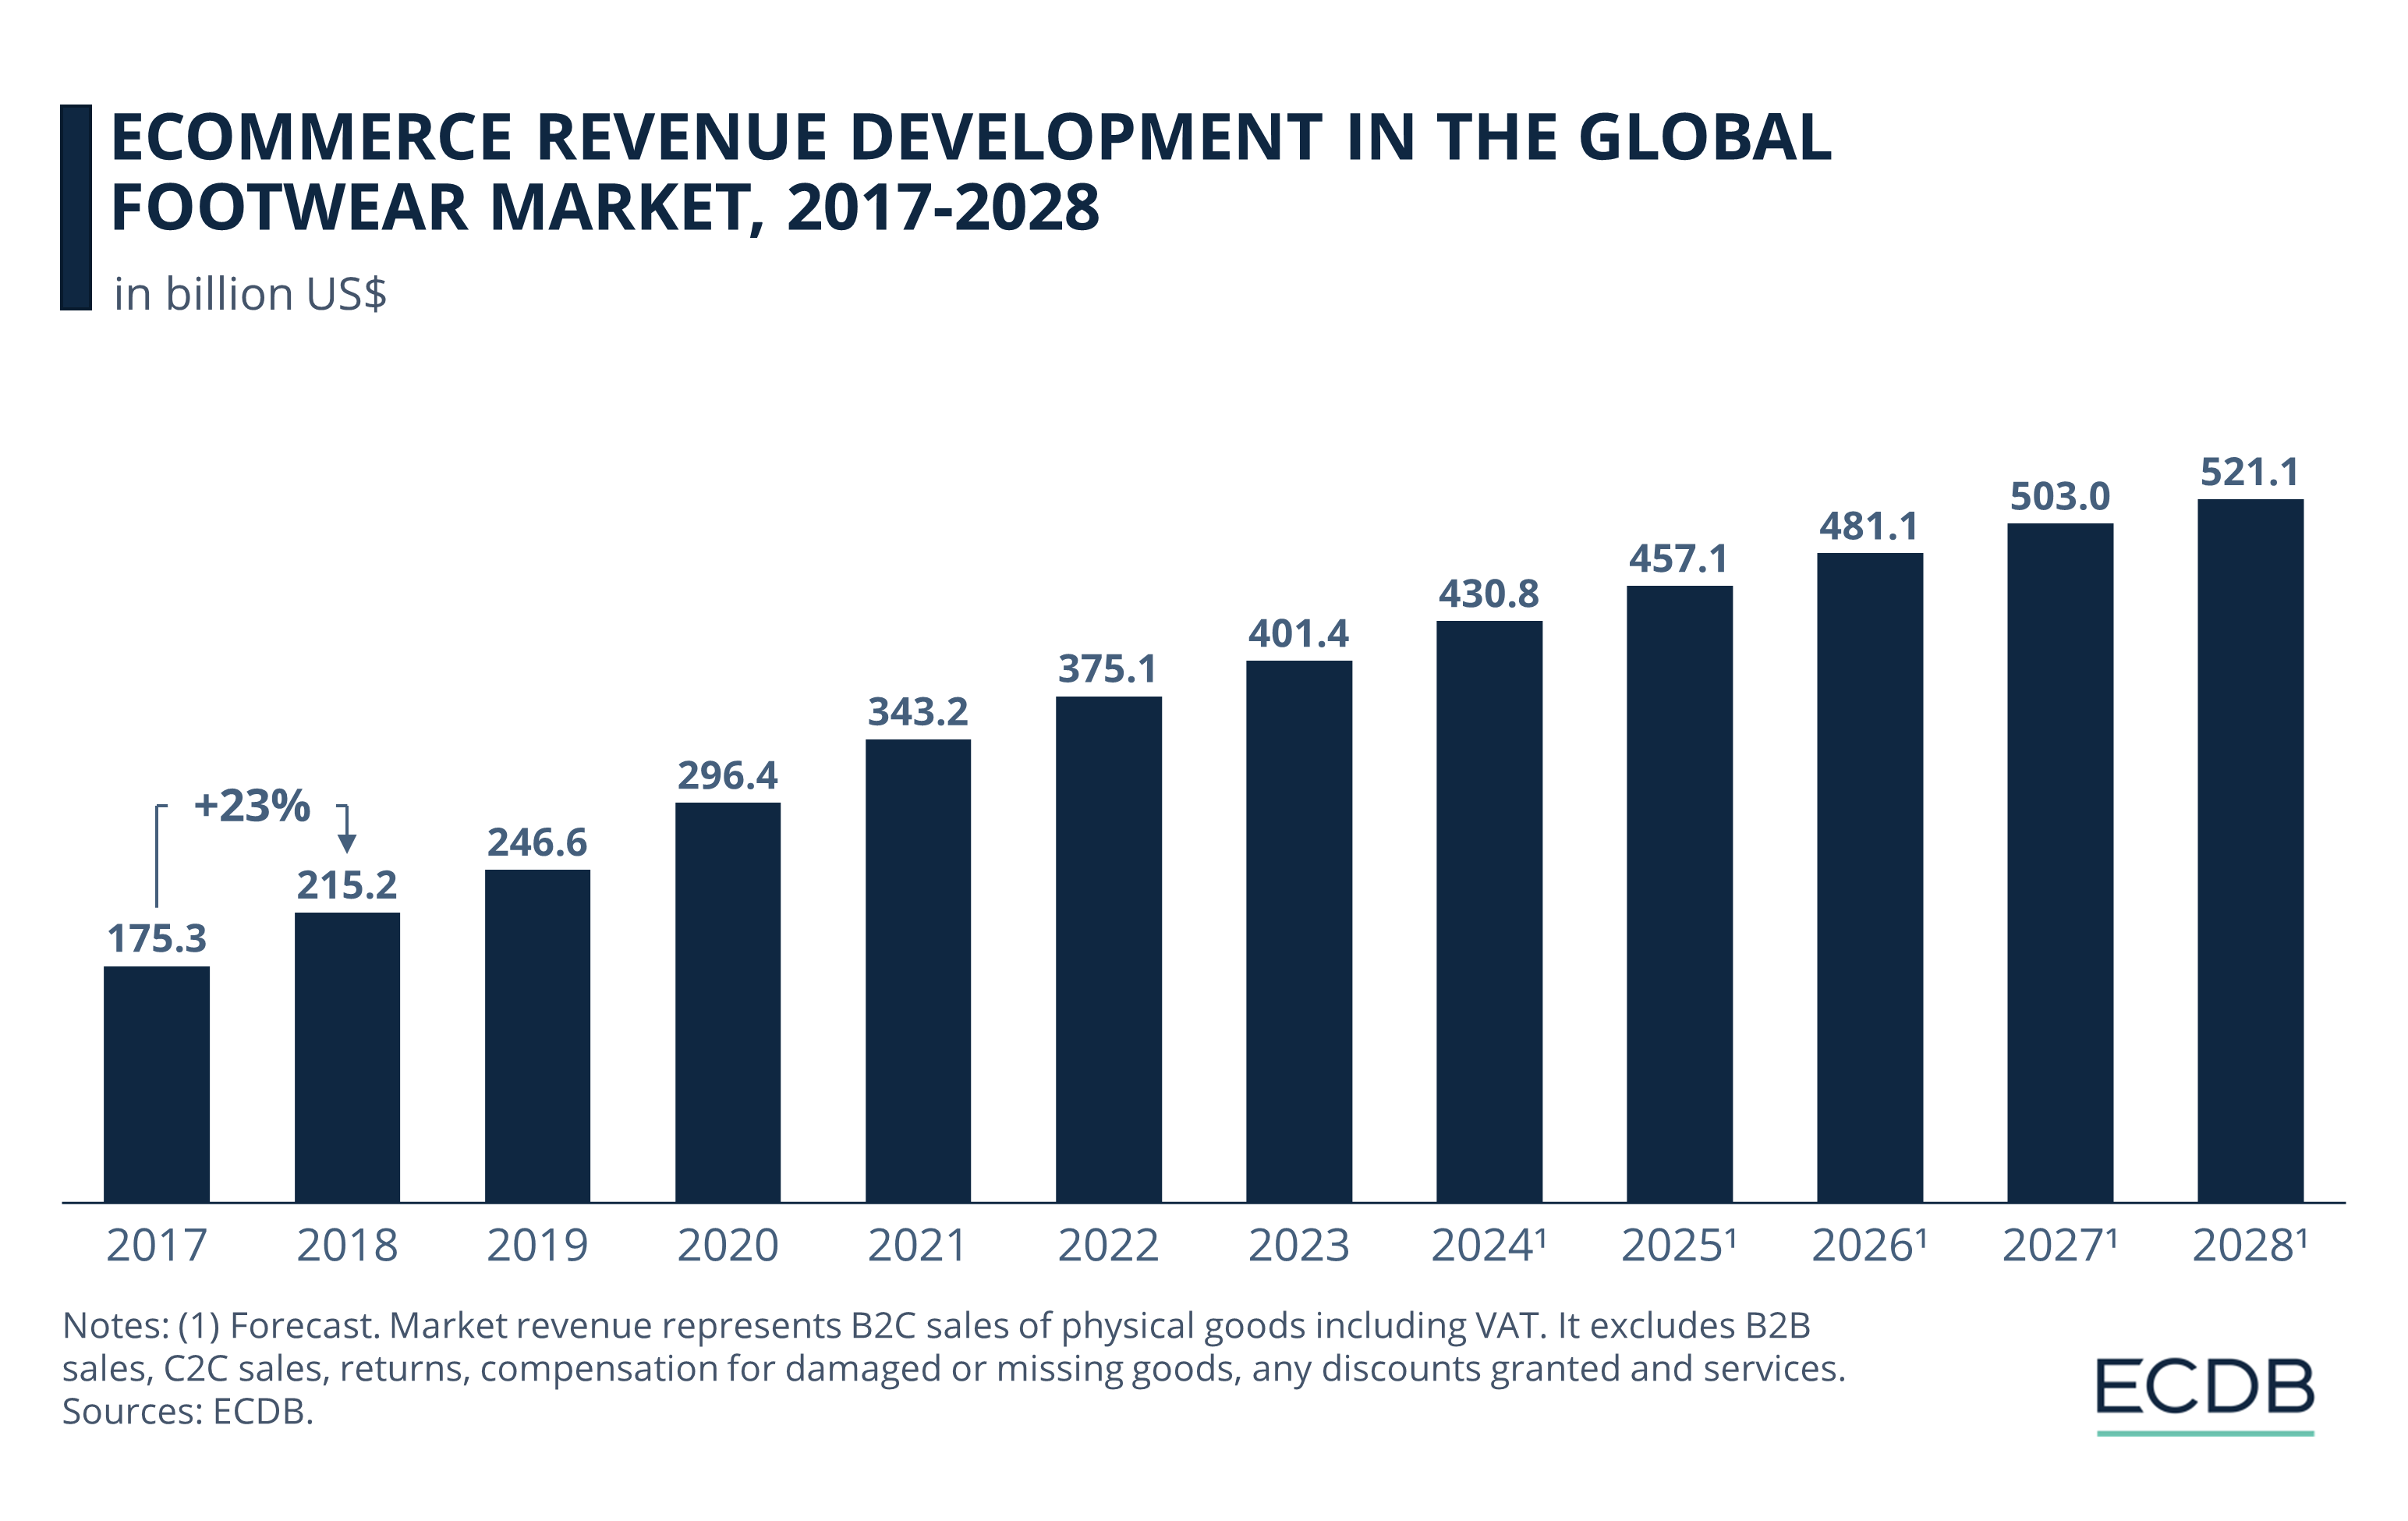 eCommerce Revenue Development in the Global Footwear Market, 2017-2028